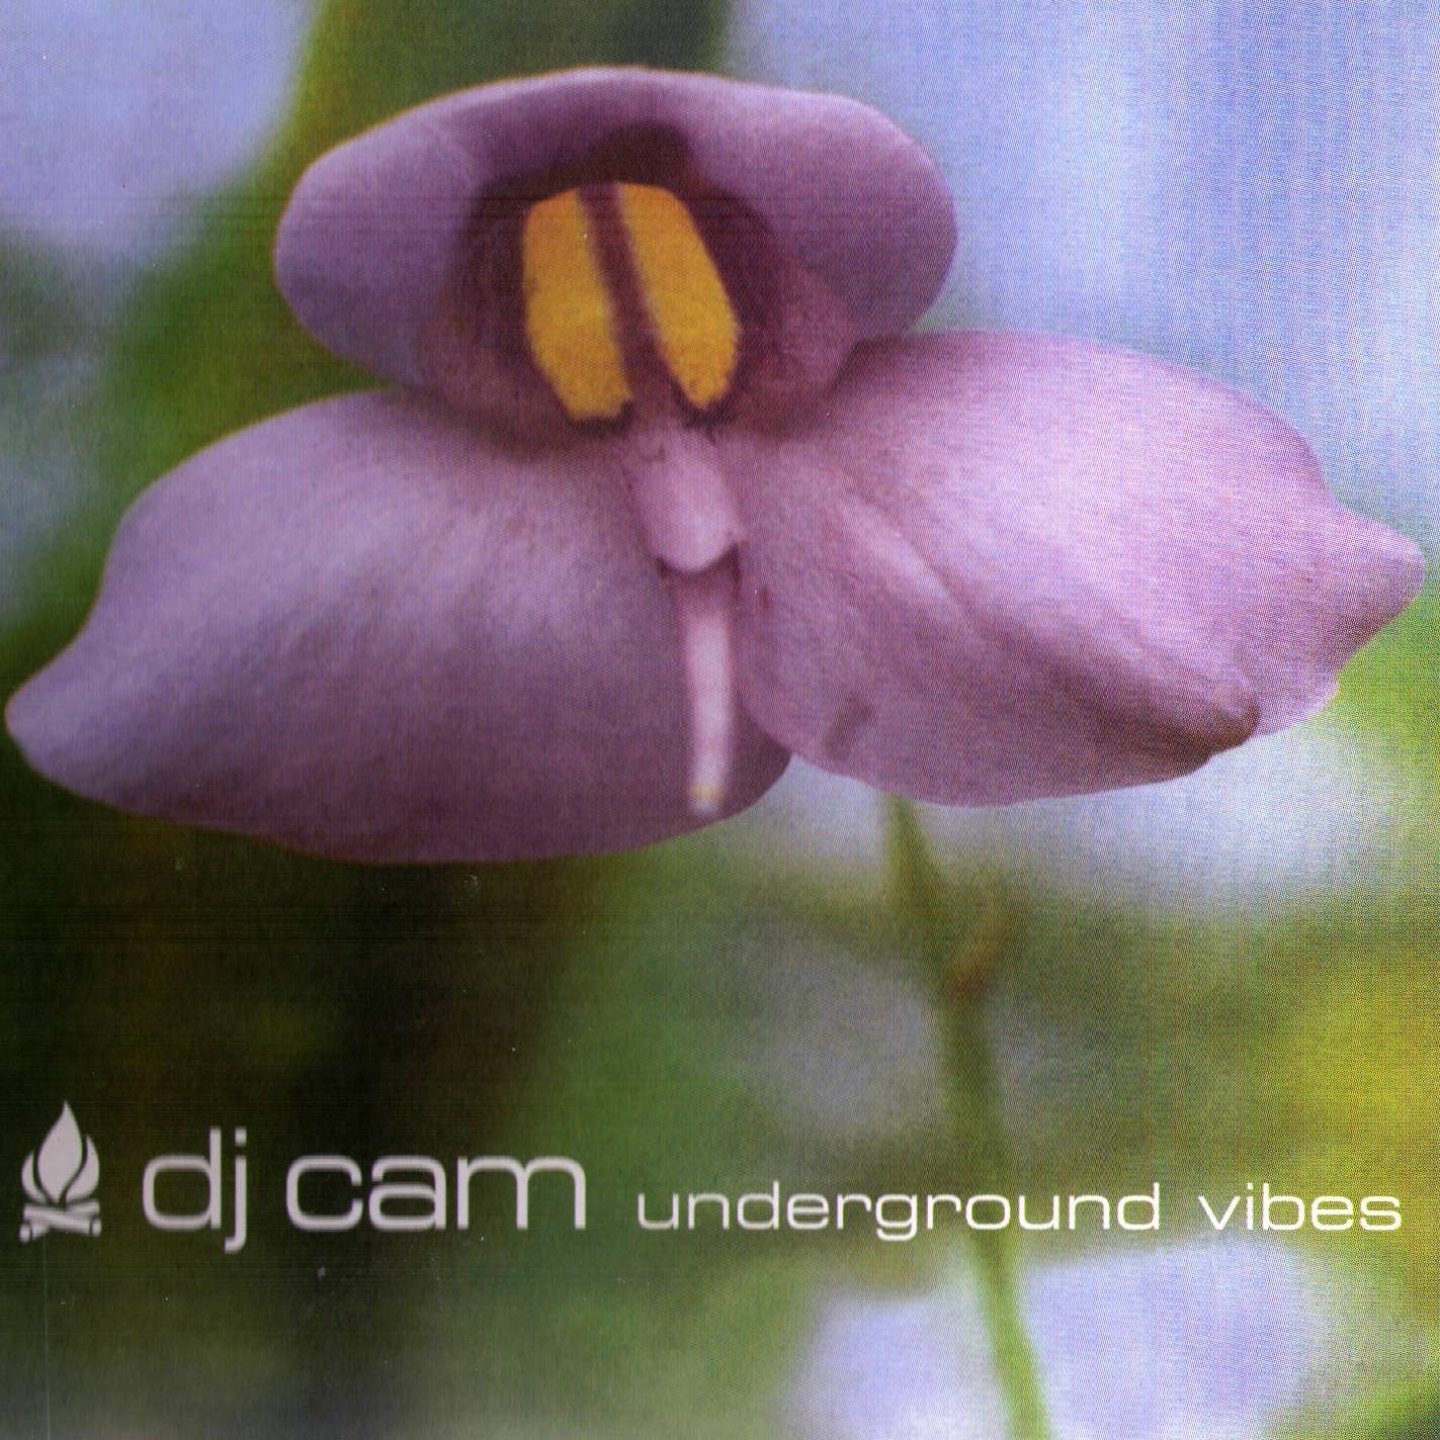 Underground Vibes Rar Download